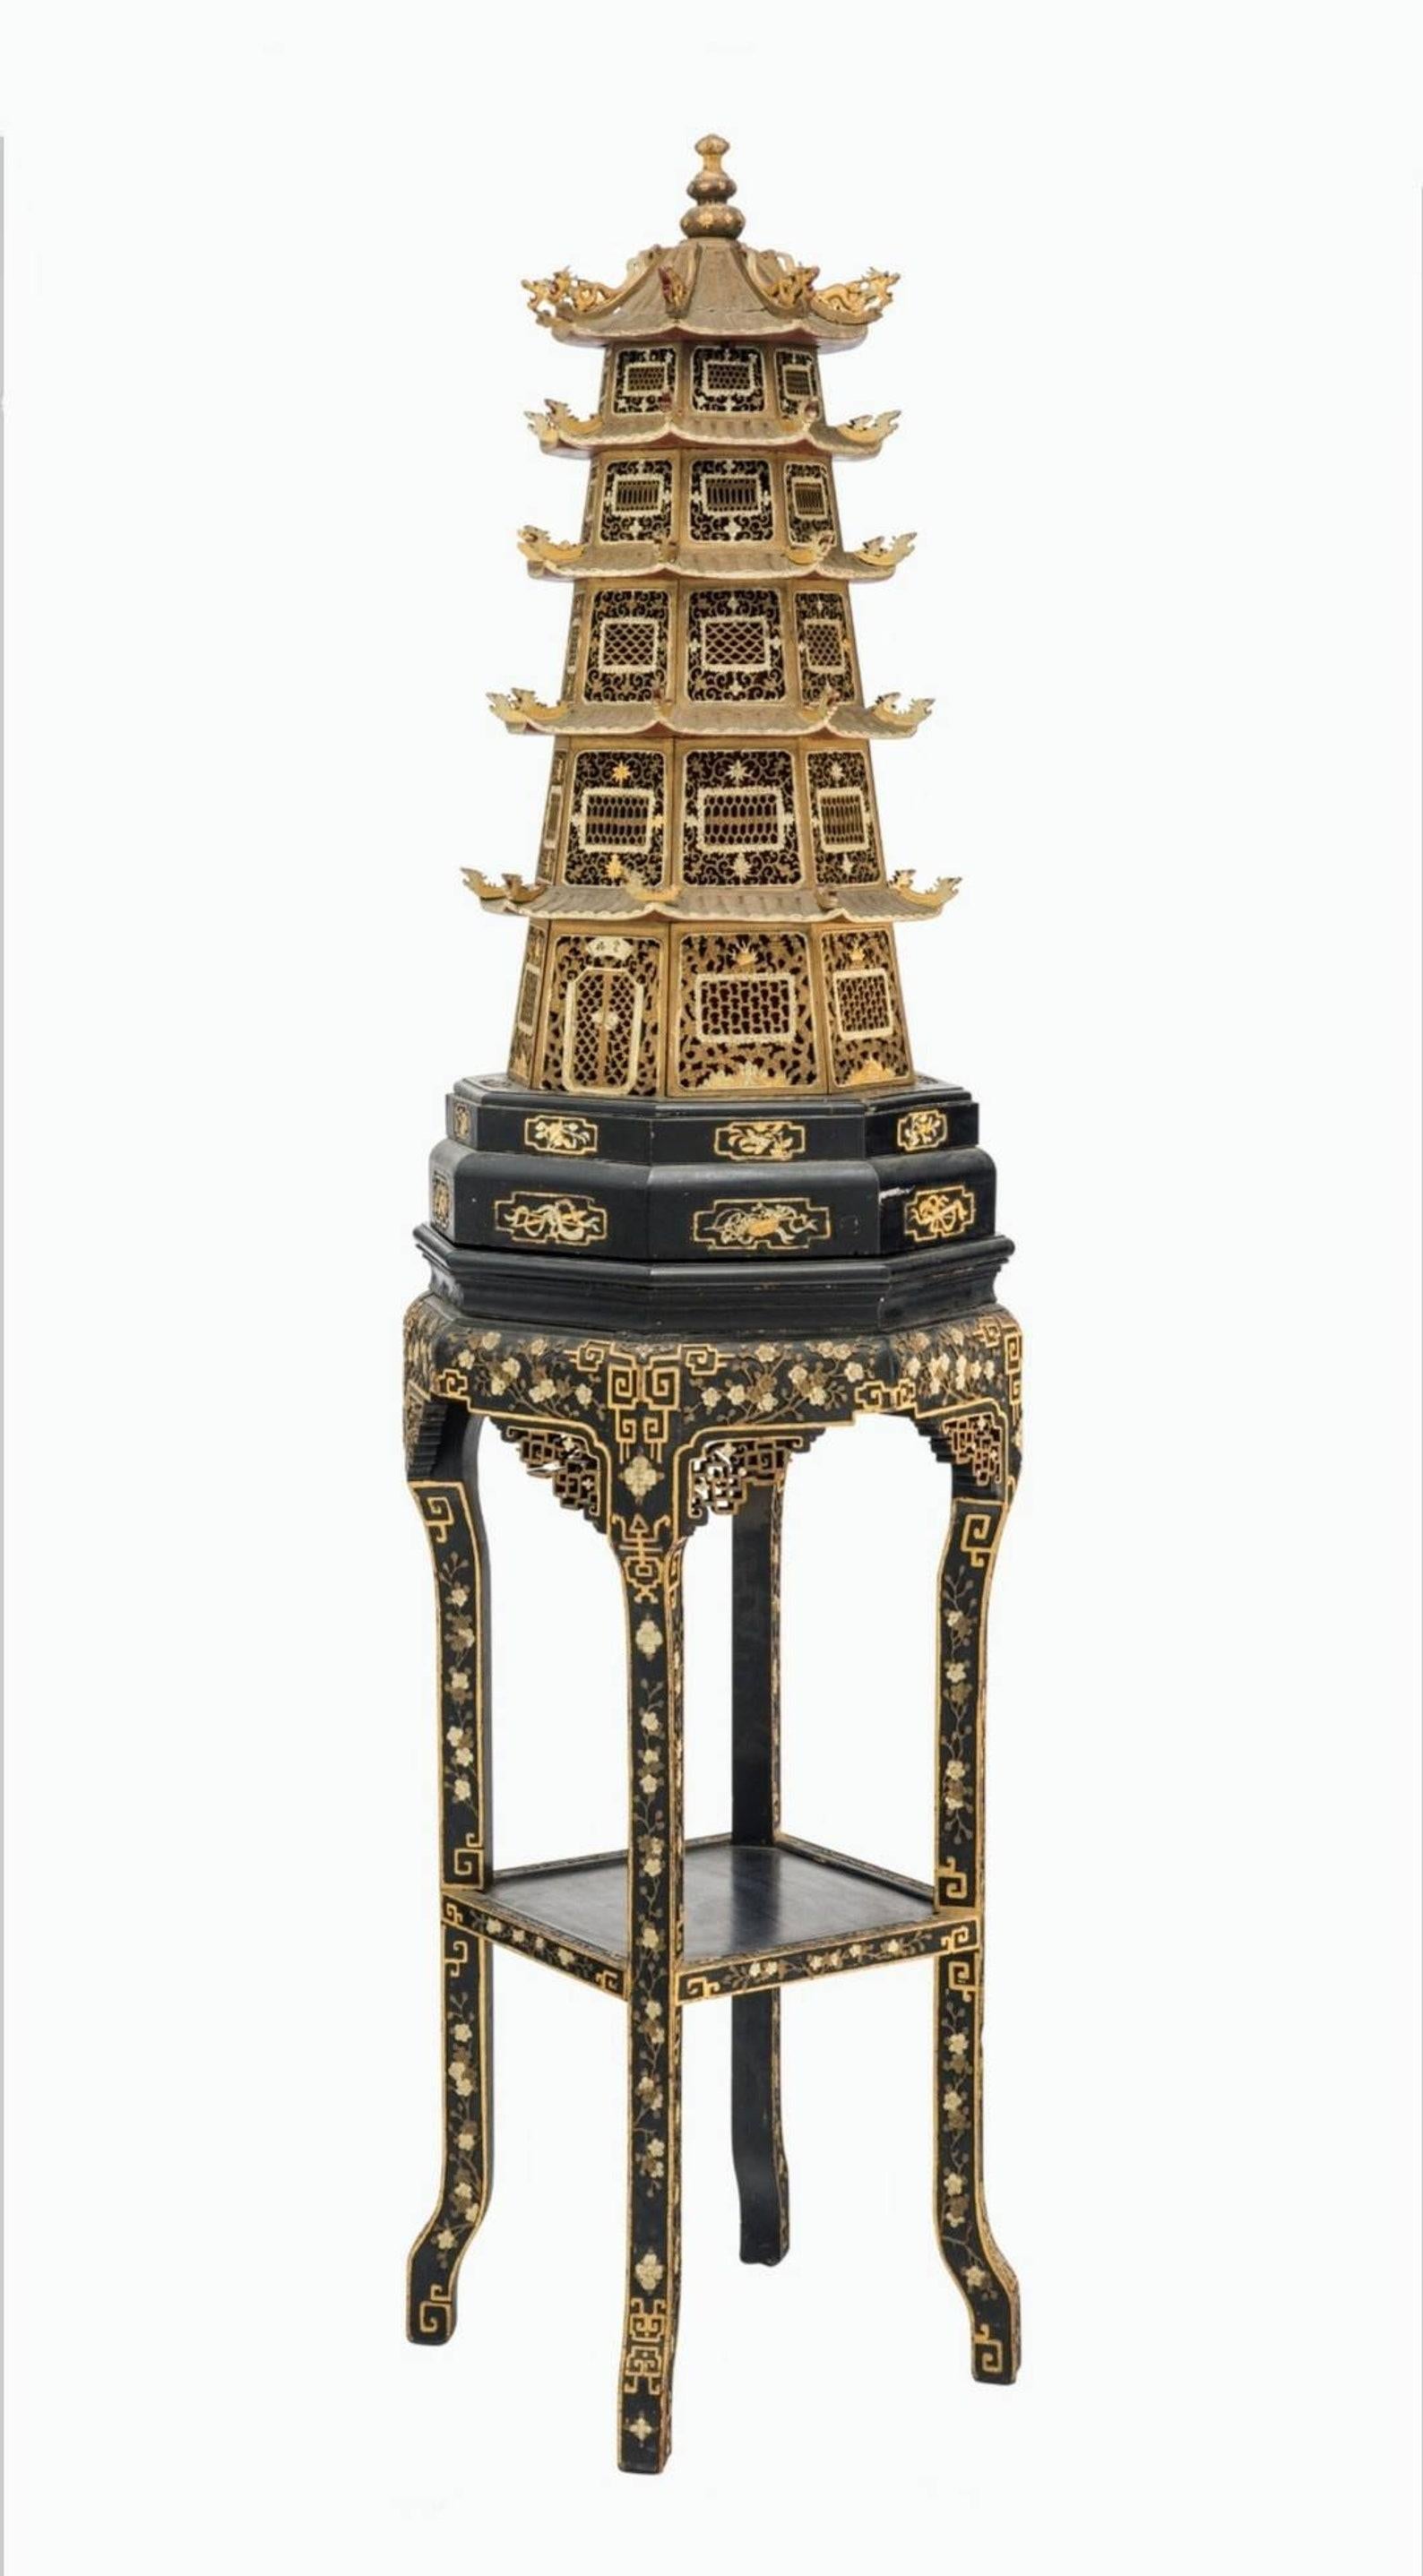 Magnifique pagode-autel de temple chinois de la dynastie Qing (1636-1912), transformée en un grand lampadaire sculptural unique en son genre.

Fabriquée à la main de manière exquise en Chine au XIXe siècle, cette sculpture architecturale en forme de